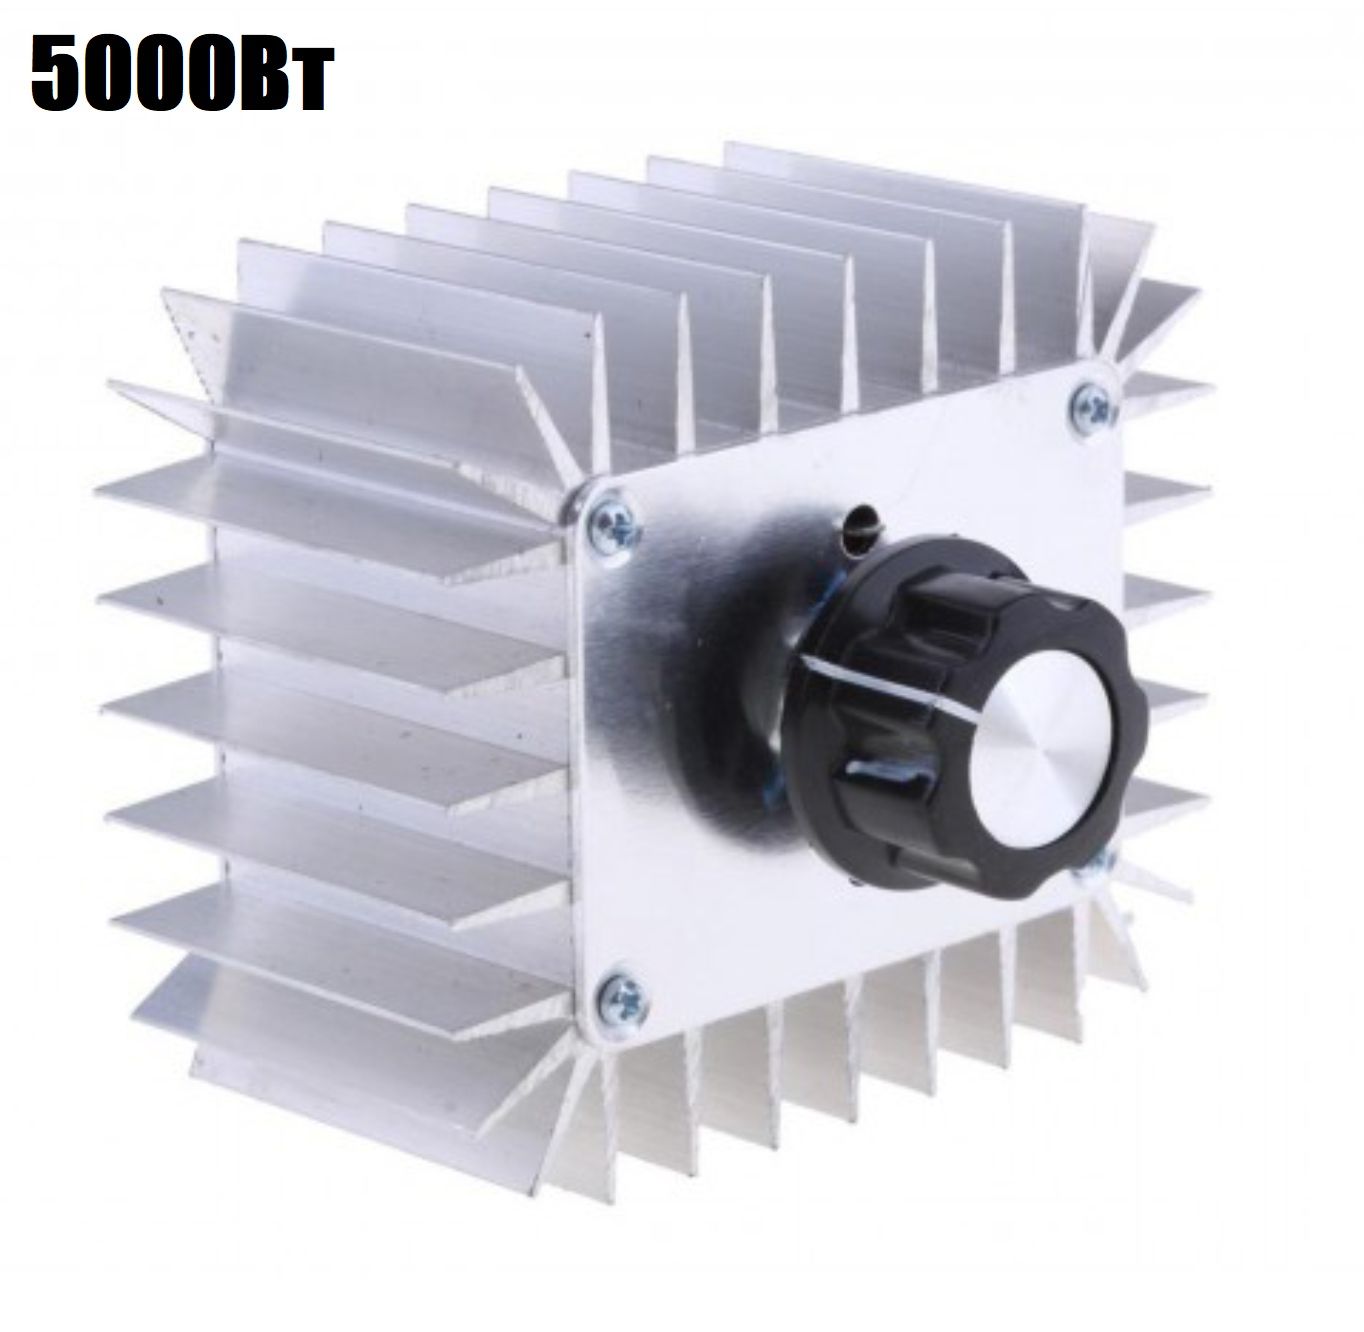 Симисторный 9V регулятор переменного напряжения, температуры, света, скорости 5000Вт (У) симисторный регулятор скорости impera